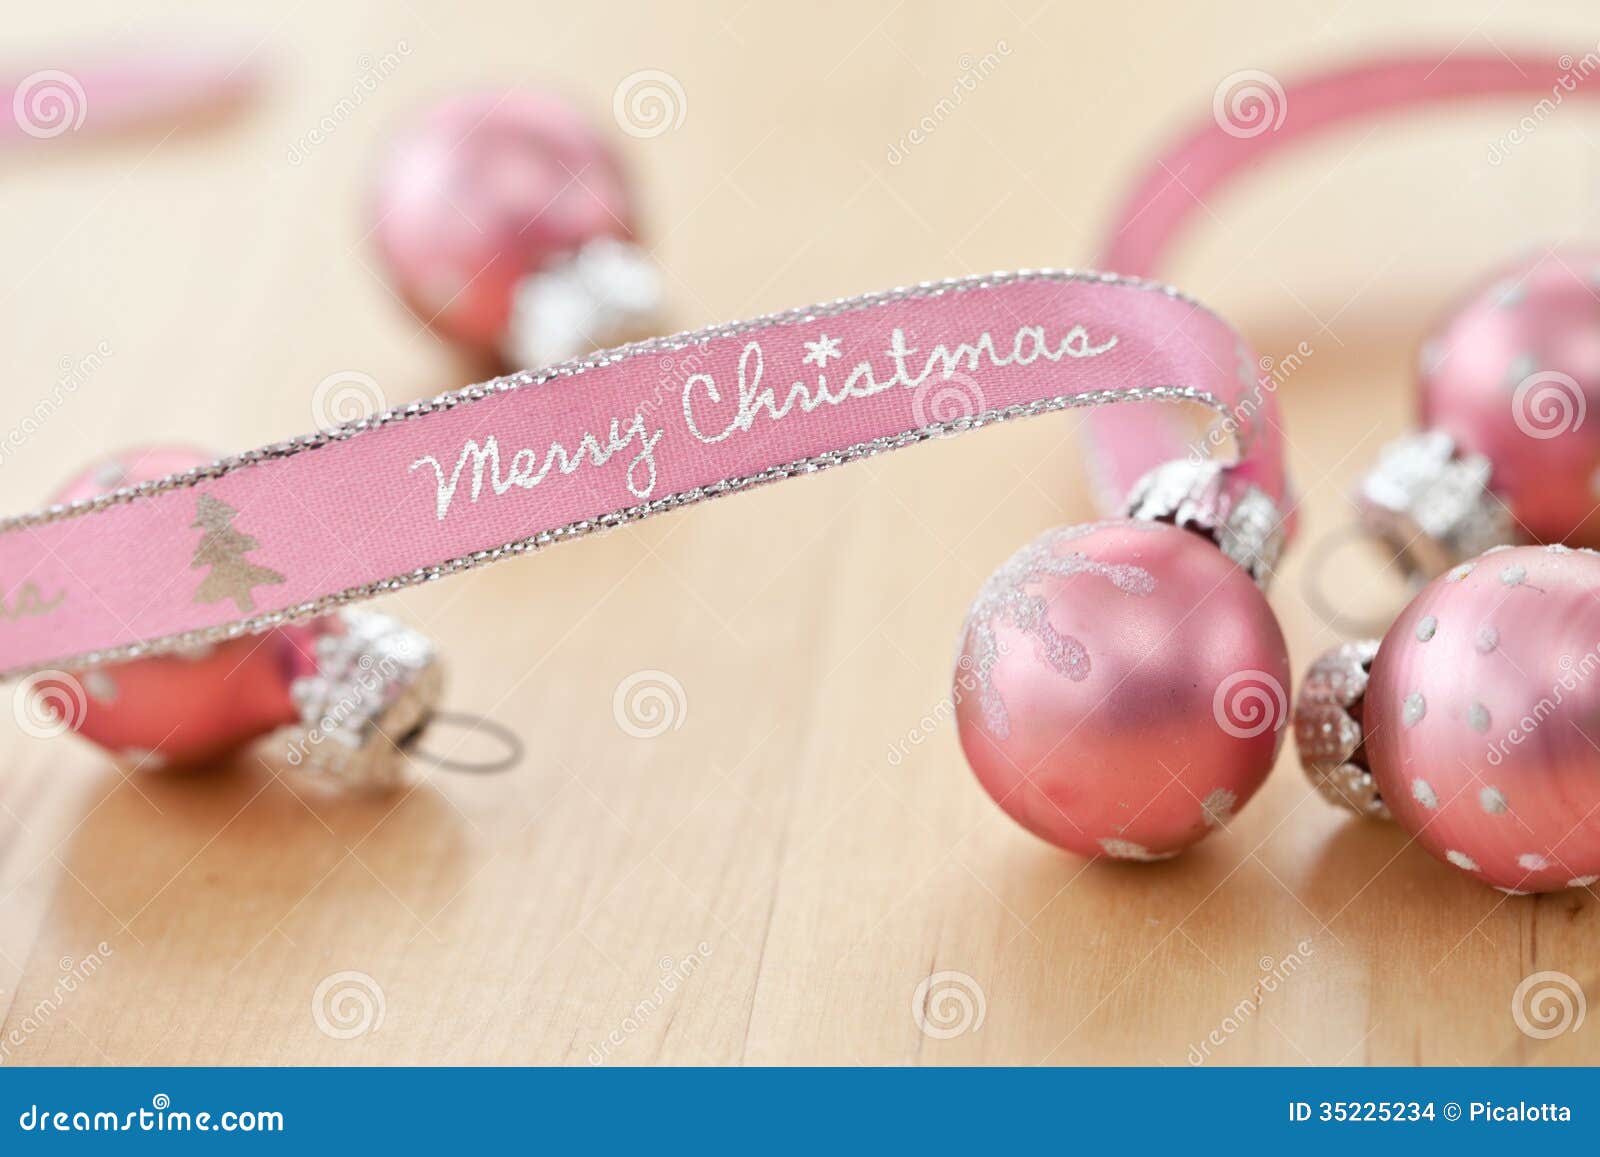 Buon Natale Rosa.Buon Natale Scritto Sul Nastro Rosa Fotografia Stock Immagine Di Spazio Colorful 35225234